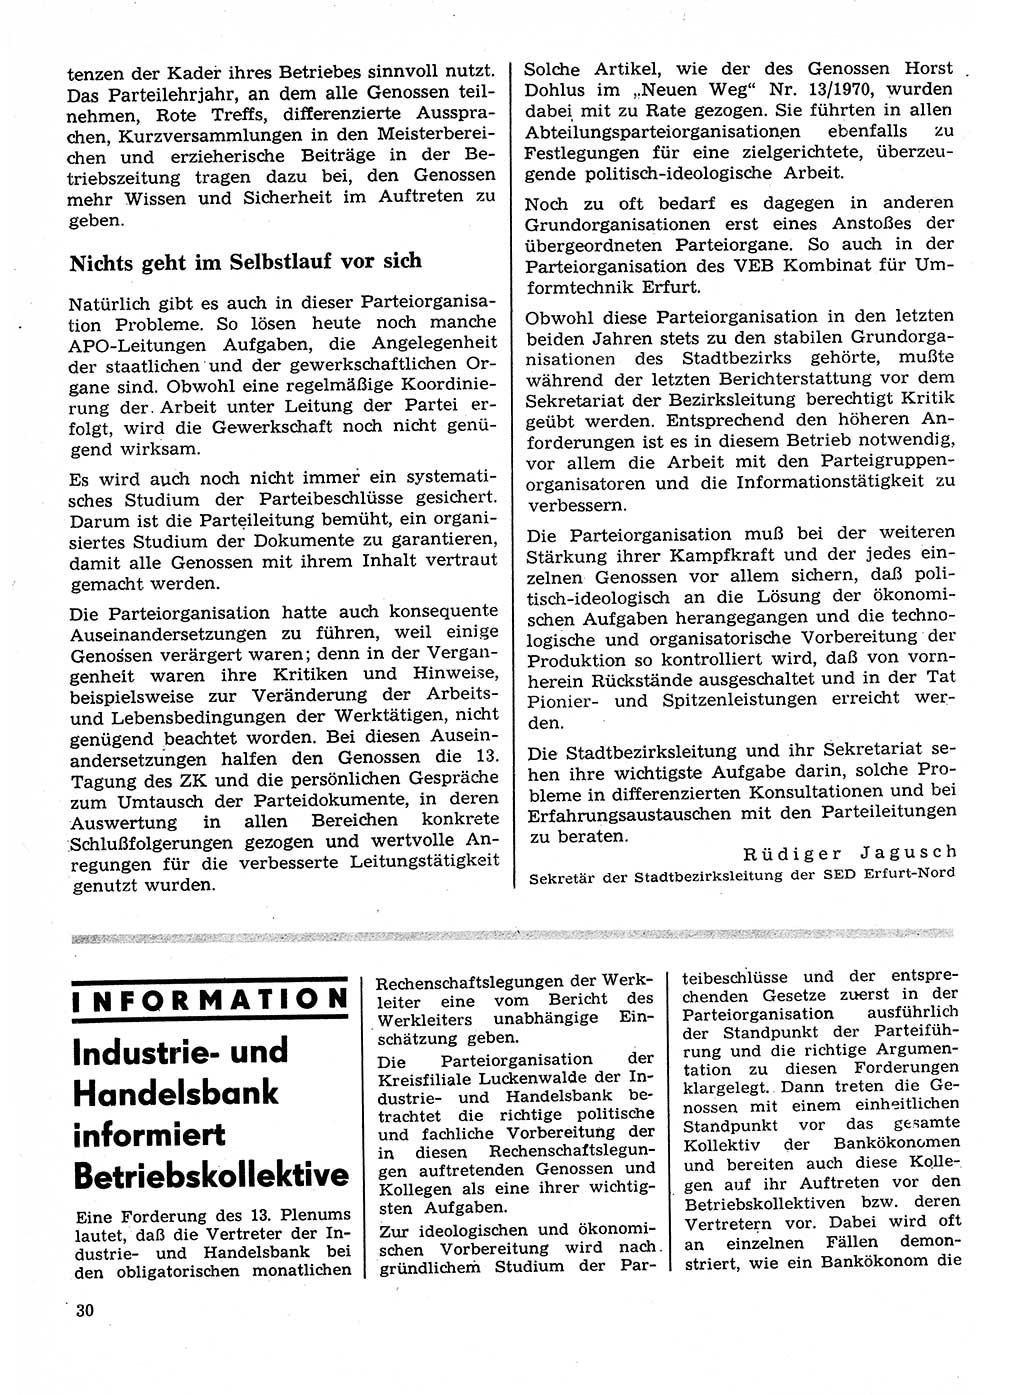 Neuer Weg (NW), Organ des Zentralkomitees (ZK) der SED (Sozialistische Einheitspartei Deutschlands) für Fragen des Parteilebens, 26. Jahrgang [Deutsche Demokratische Republik (DDR)] 1971, Seite 30 (NW ZK SED DDR 1971, S. 30)